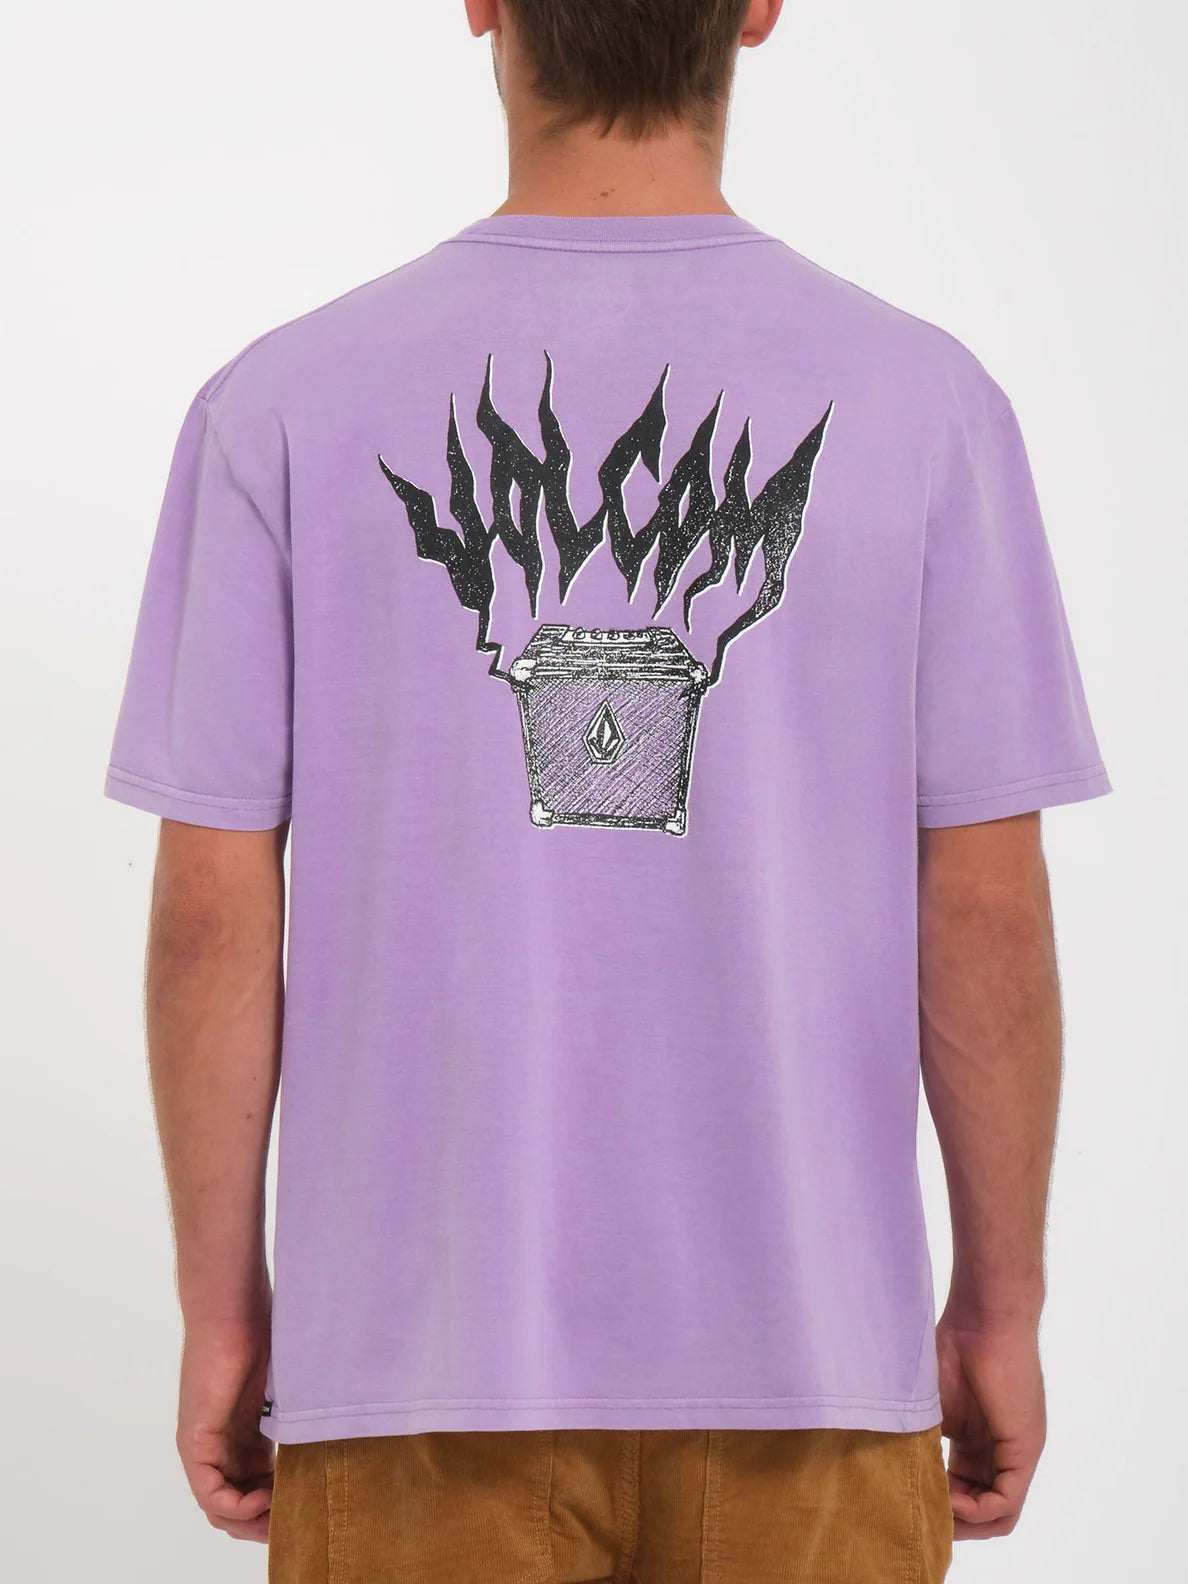 Camiseta Volcom Amplified Stone - Paisley Purple